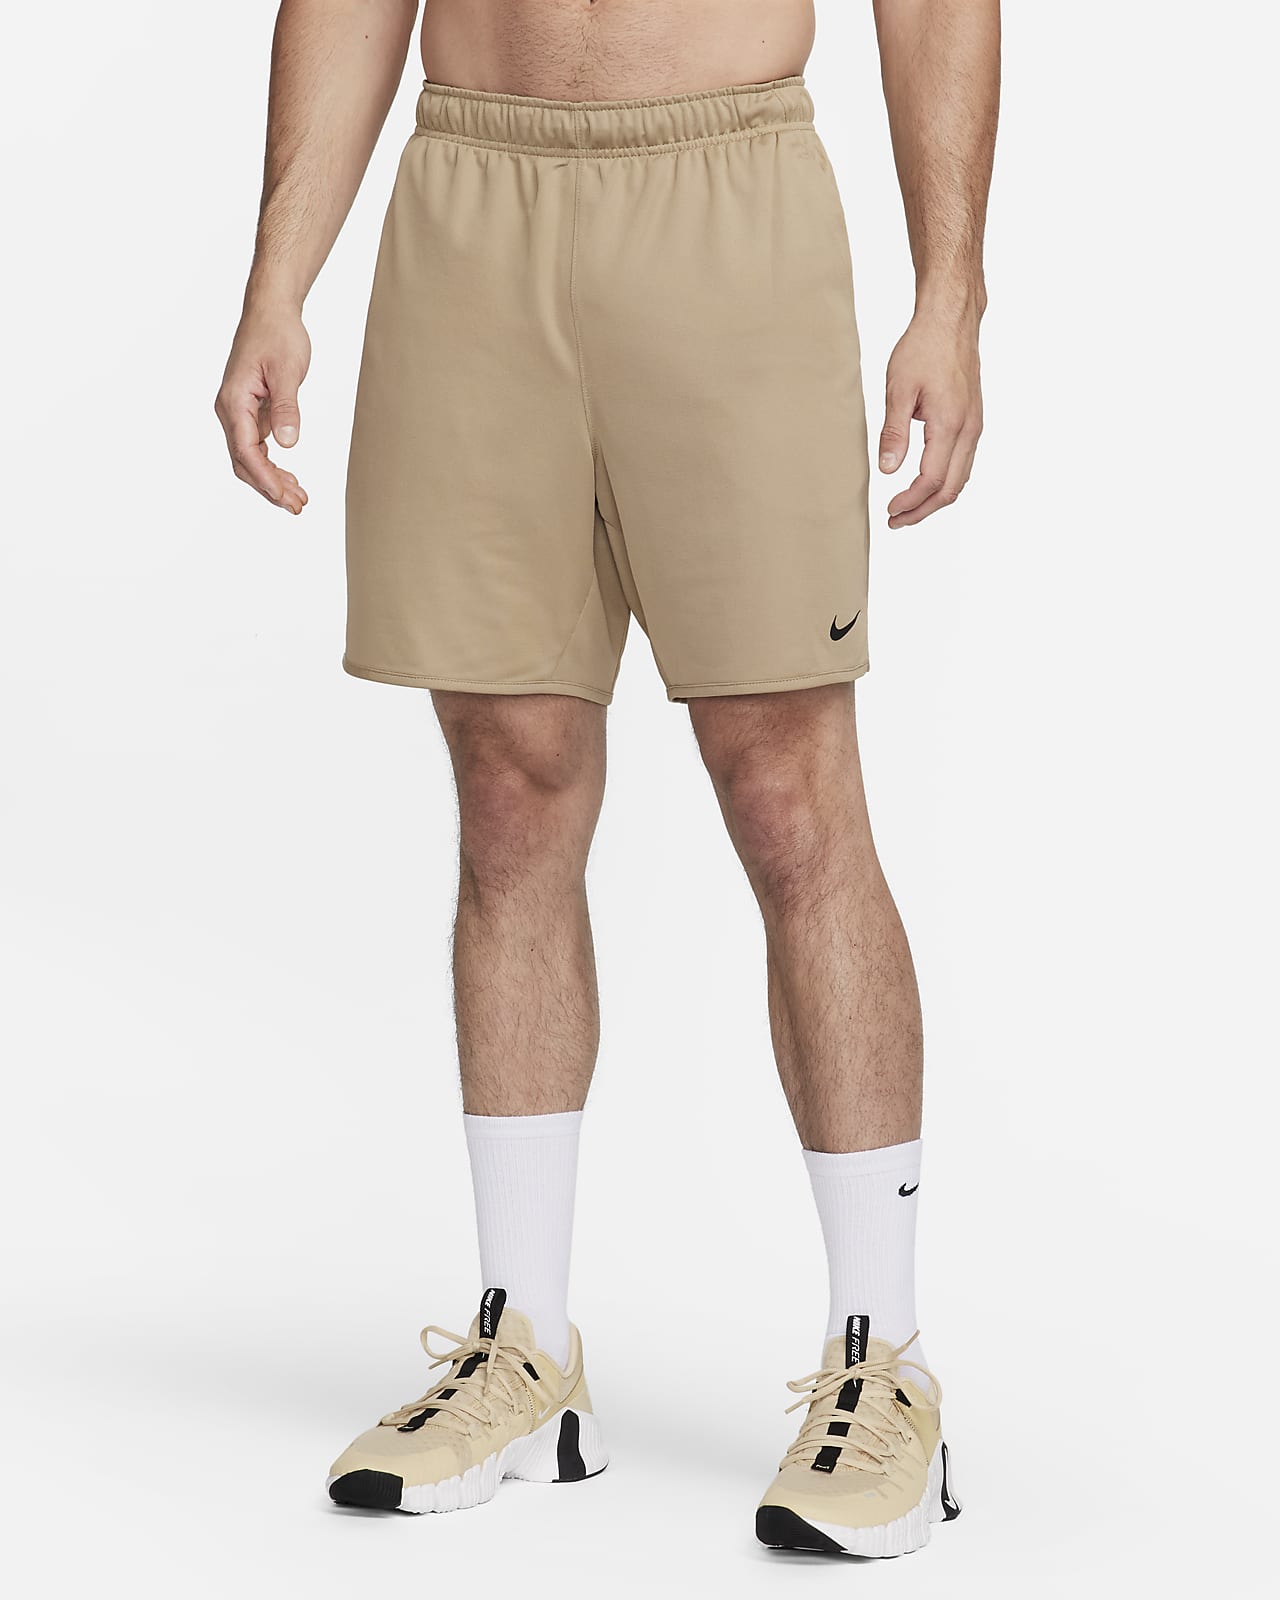 Men's Brown Shorts. Nike CA